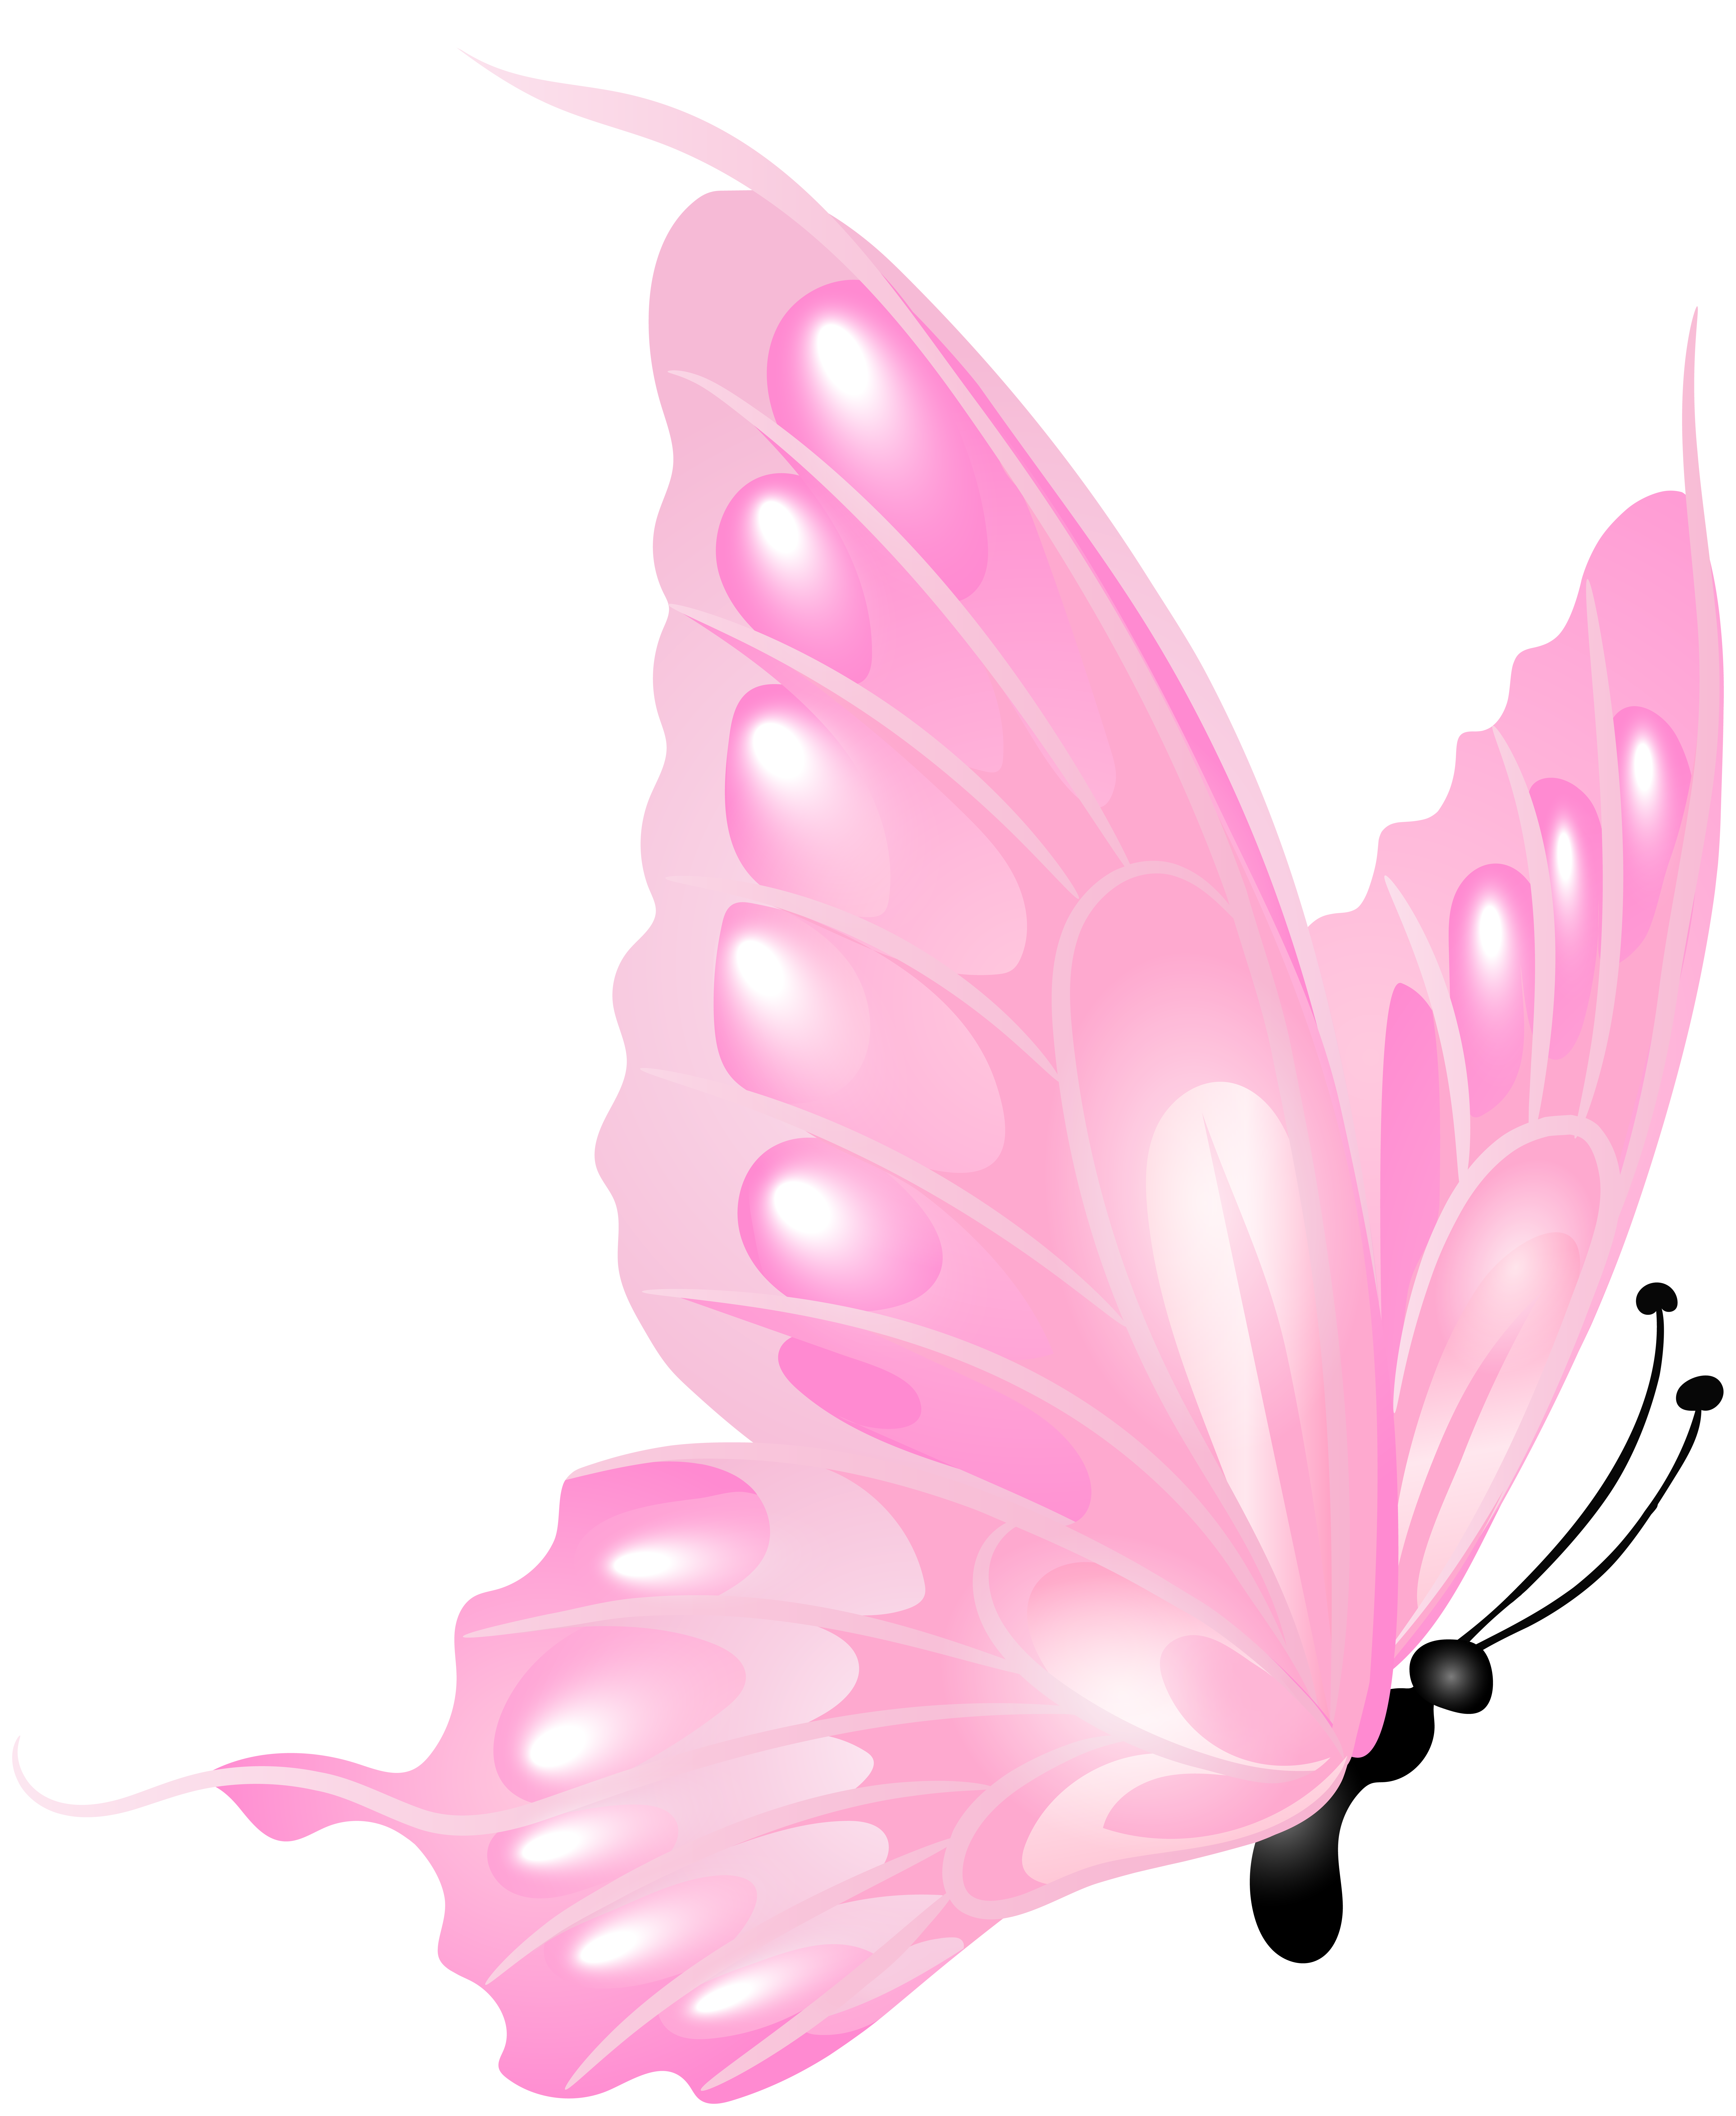 Bướm hồng trong suốt là một trong những loài bướm đẹp nhất mà bạn từng thấy. Với màu sắc tươi sáng và hình dáng đầy uyển chuyển của mình, bướm hồng trong suốt đã chiếm trọn trái tim của rất nhiều người. Hãy đến và chiêm ngưỡng vẻ đẹp bất tận của bướm hồng trong suốt để trải nghiệm một khoảnh khắc tuyệt vời trong thiên nhiên.